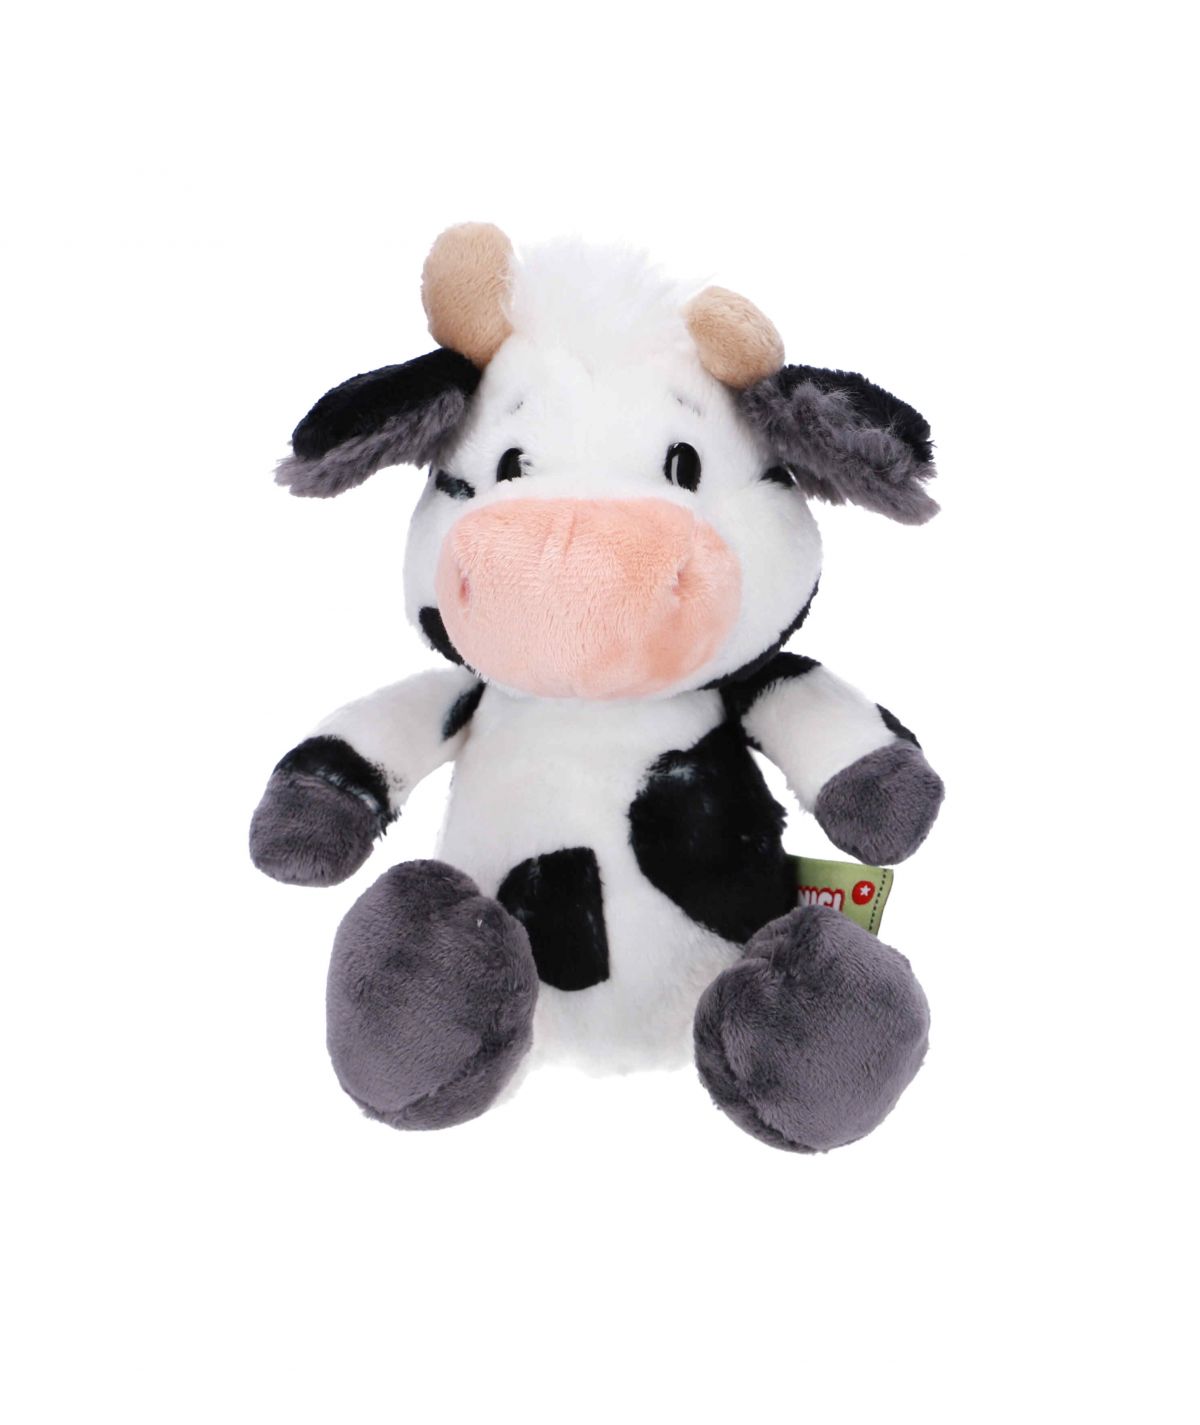 Cow plush